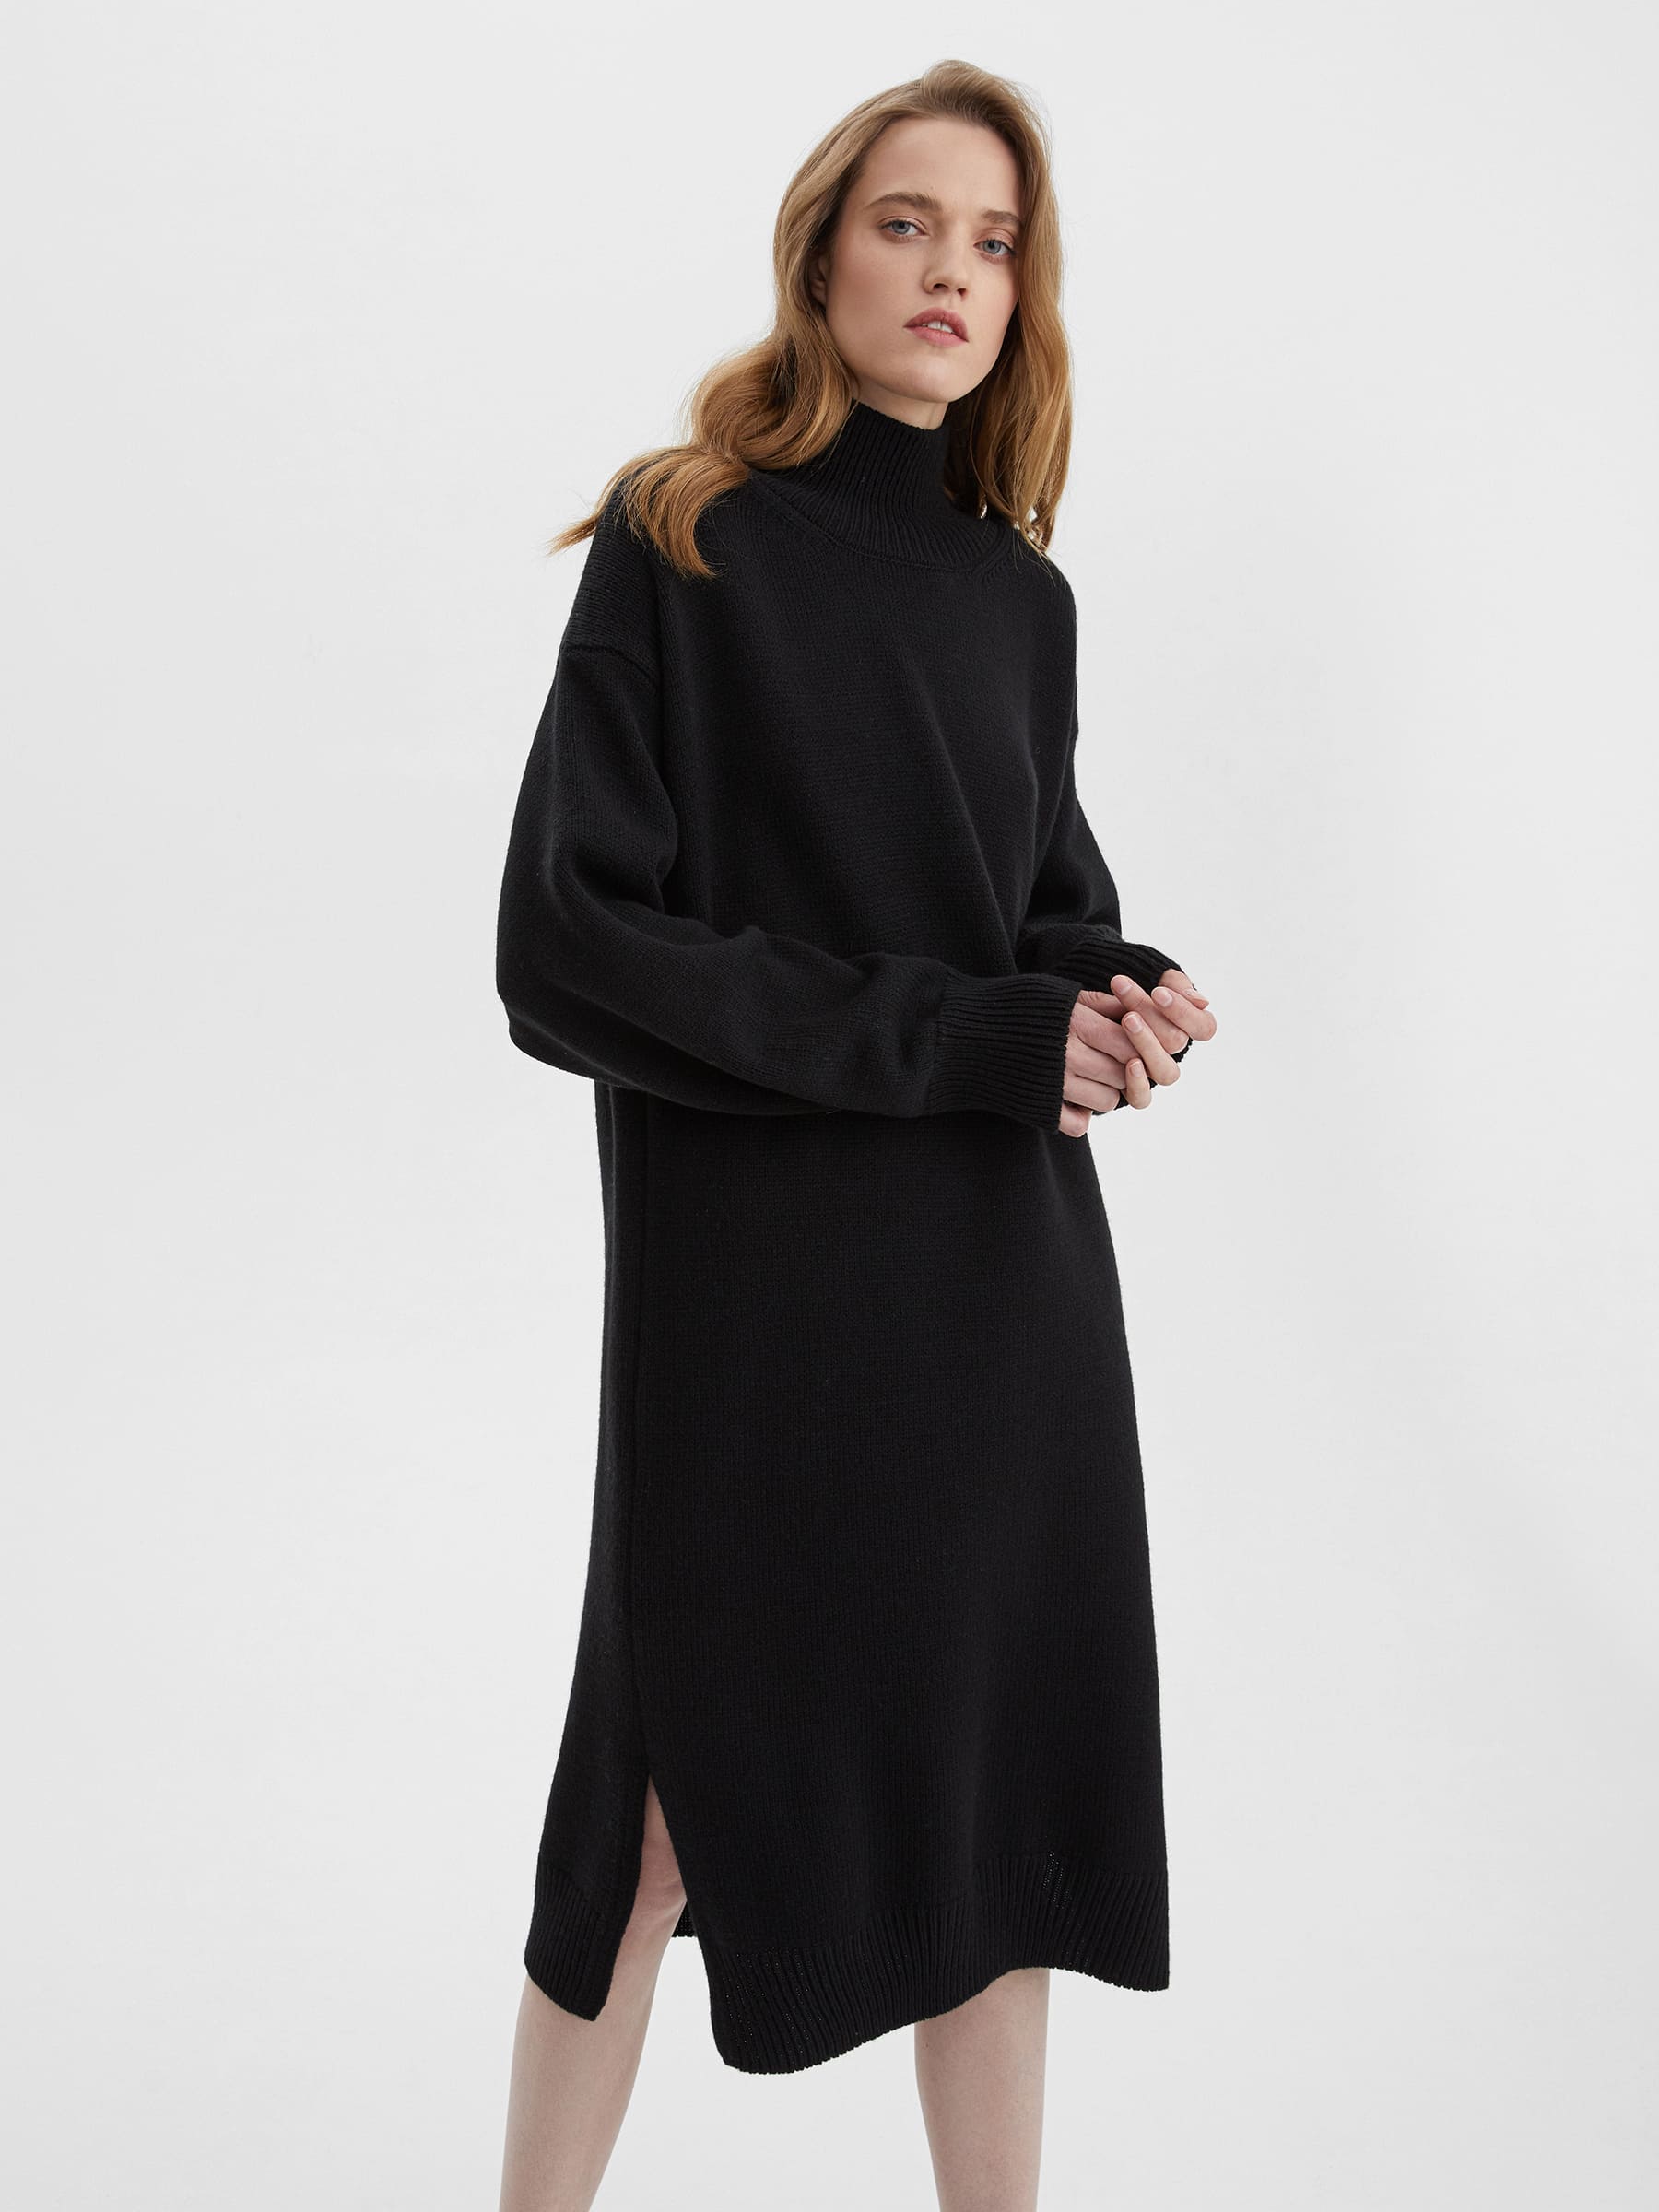 Платье свободного кроя вязаное, цвет – чёрный платье свободного кроя вязаное цвет – антрацит